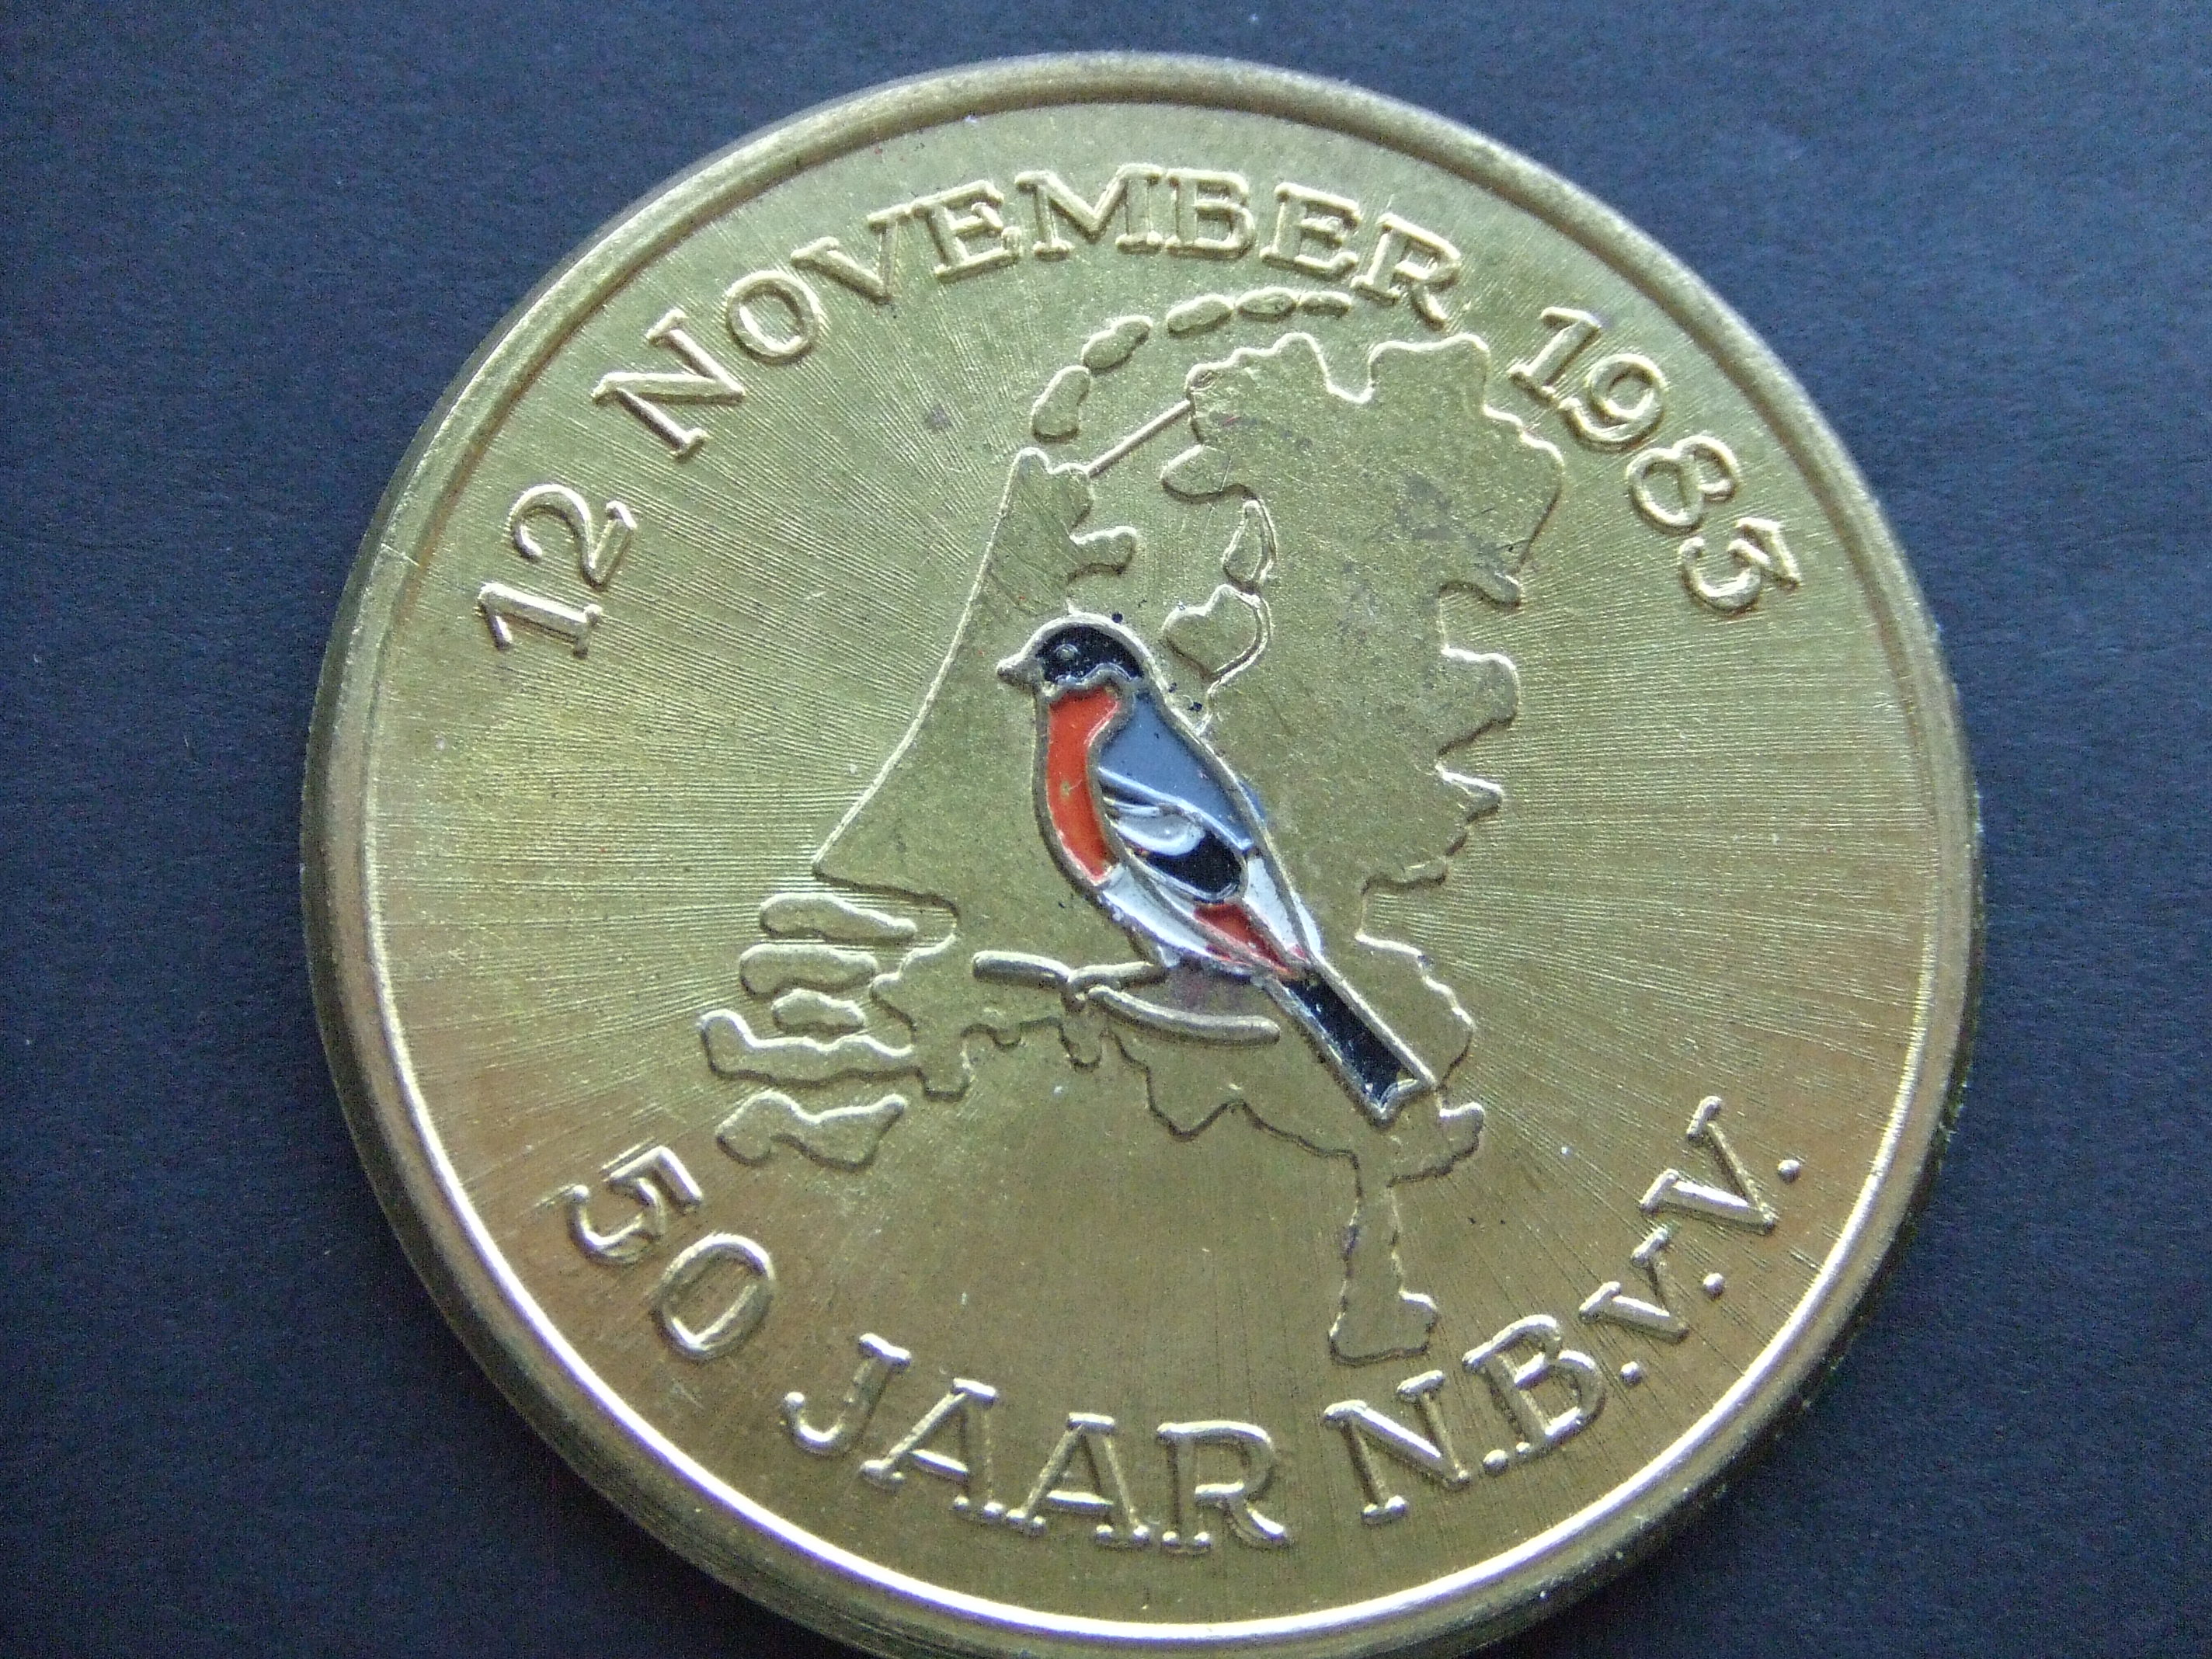 NBvV (Nederlandse Bond van Vogelliefhebbers )1983, 50 jarig jubileum aangeboden door het bestuur